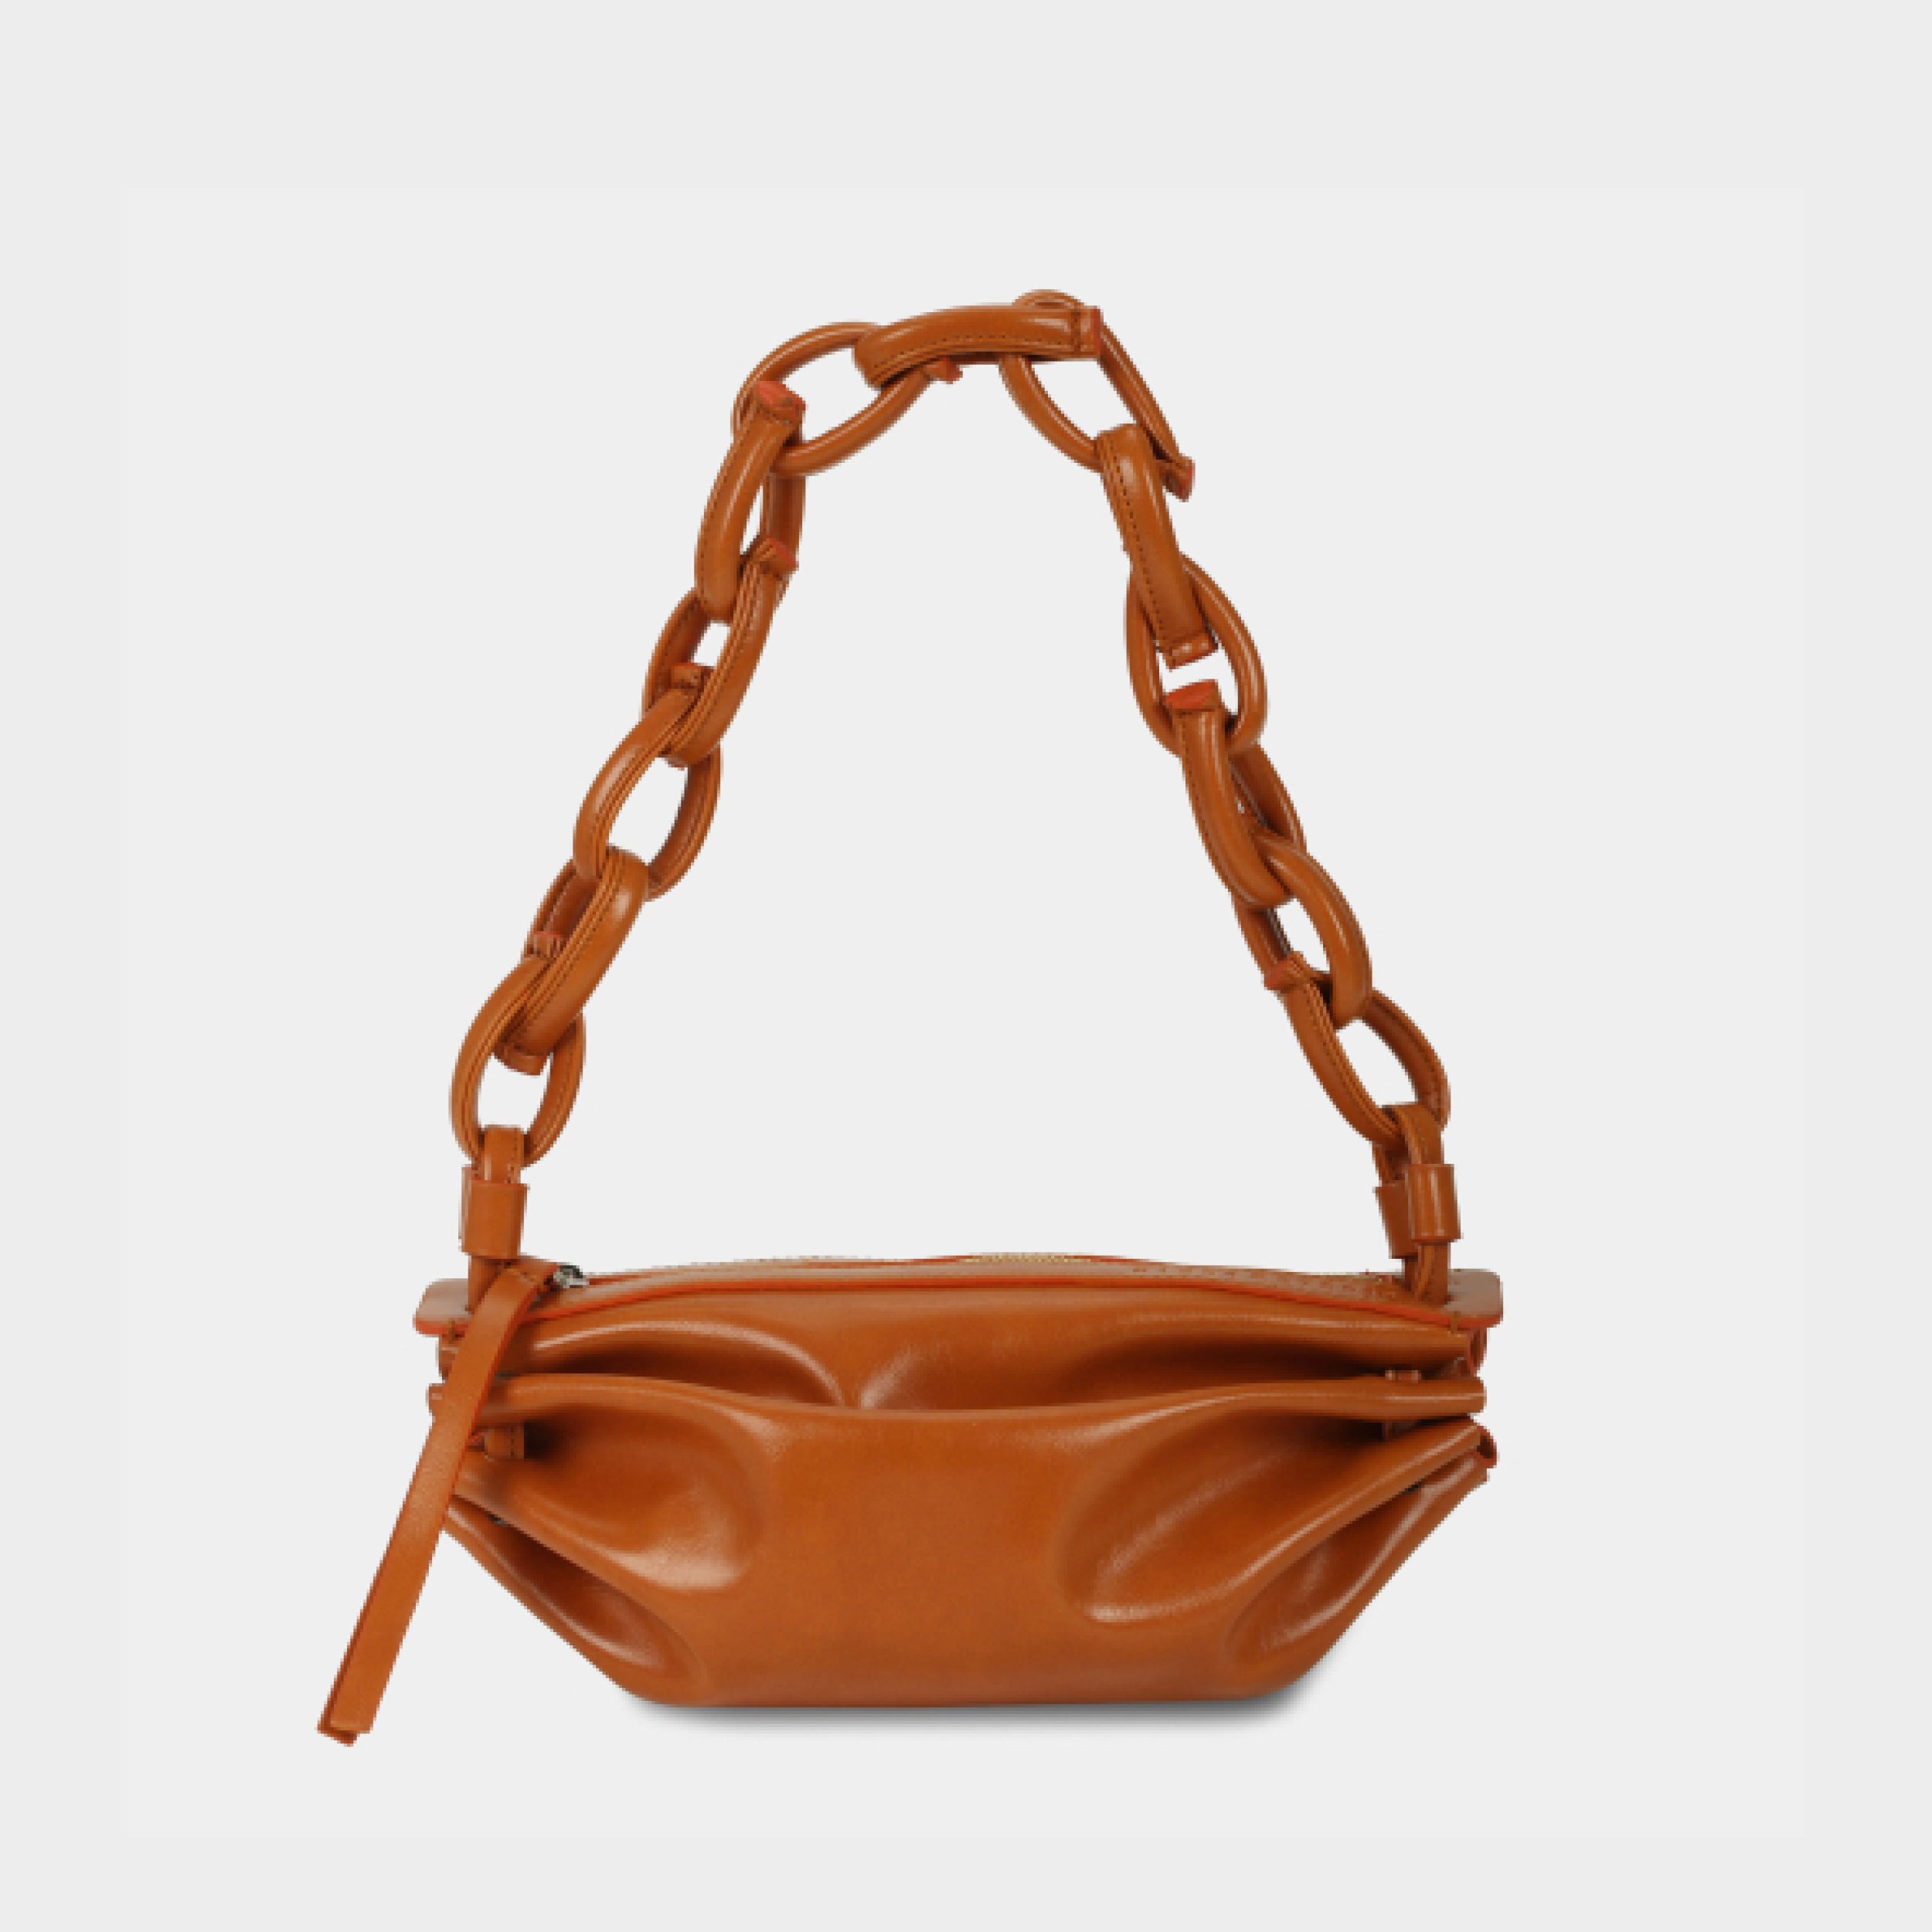 BOAT bag small size (S) orange color